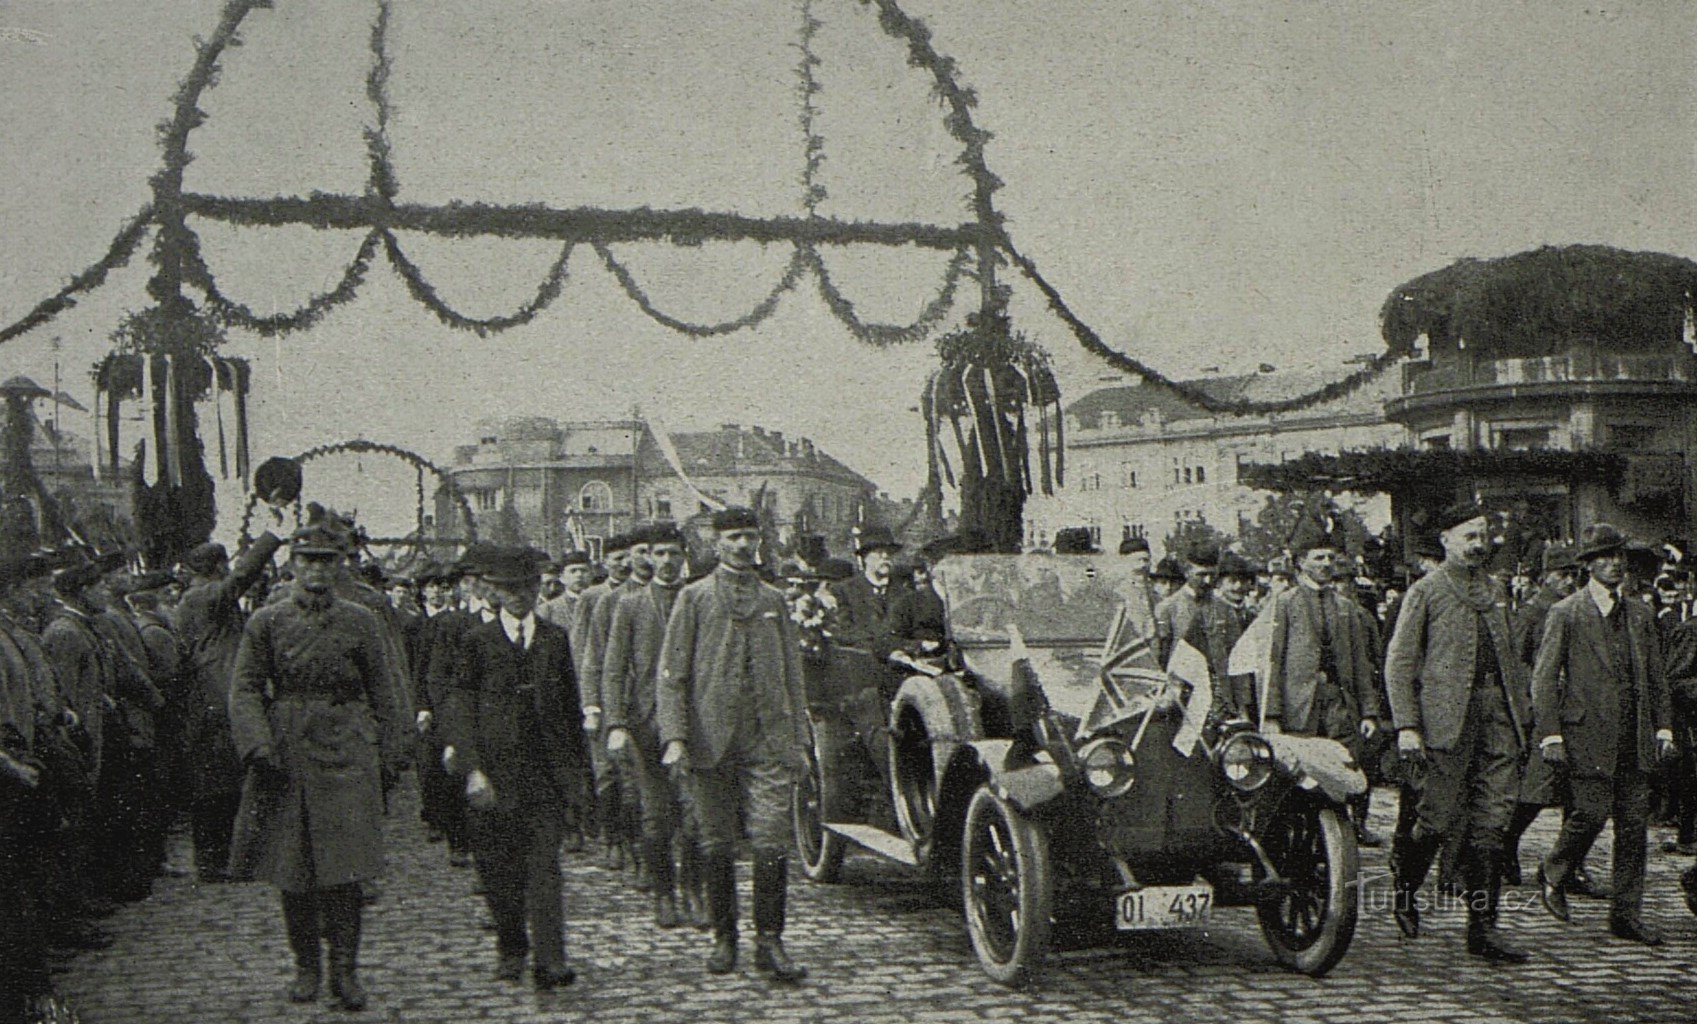 Le passage du cortège présidentiel sur le pont de Prague à Králové-Hradec le 11 octobre 1919